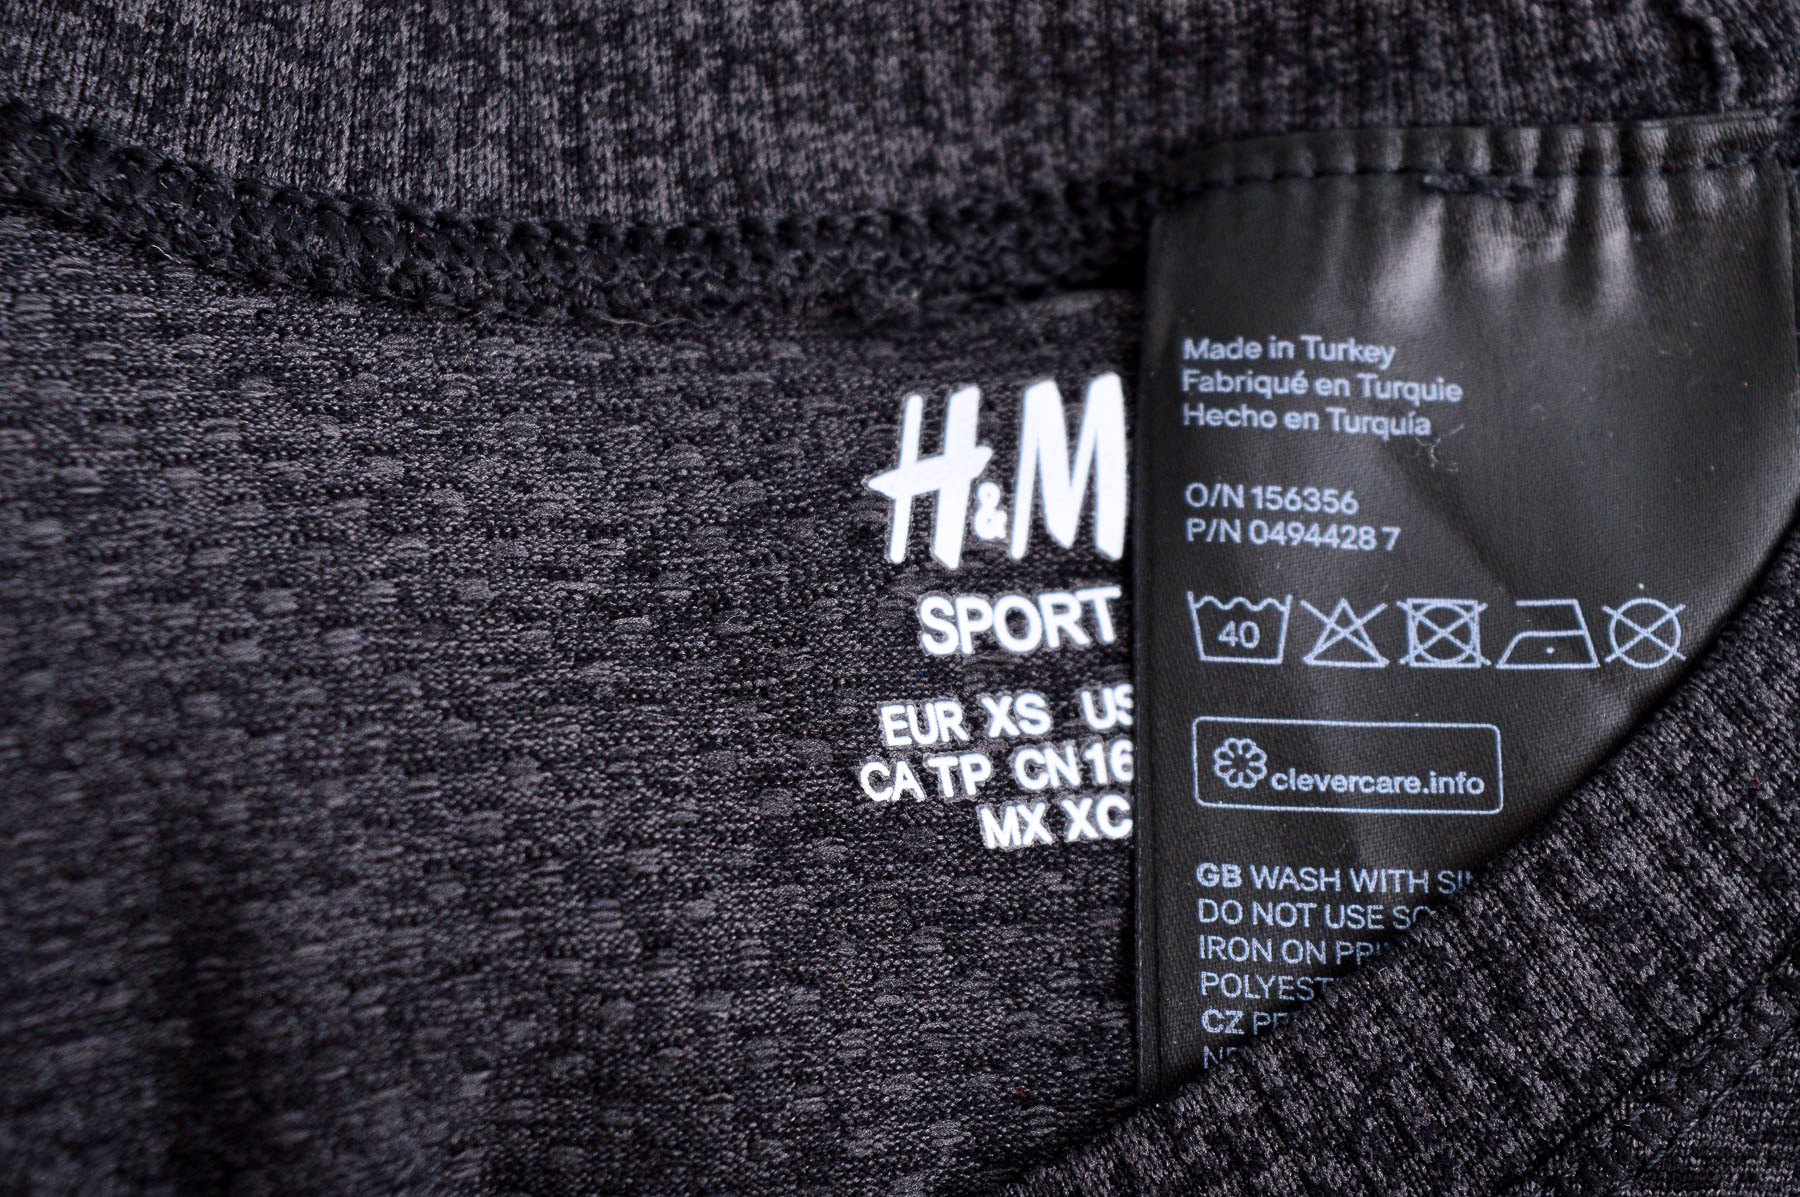 Дамска блуза - H&M Sport - 2